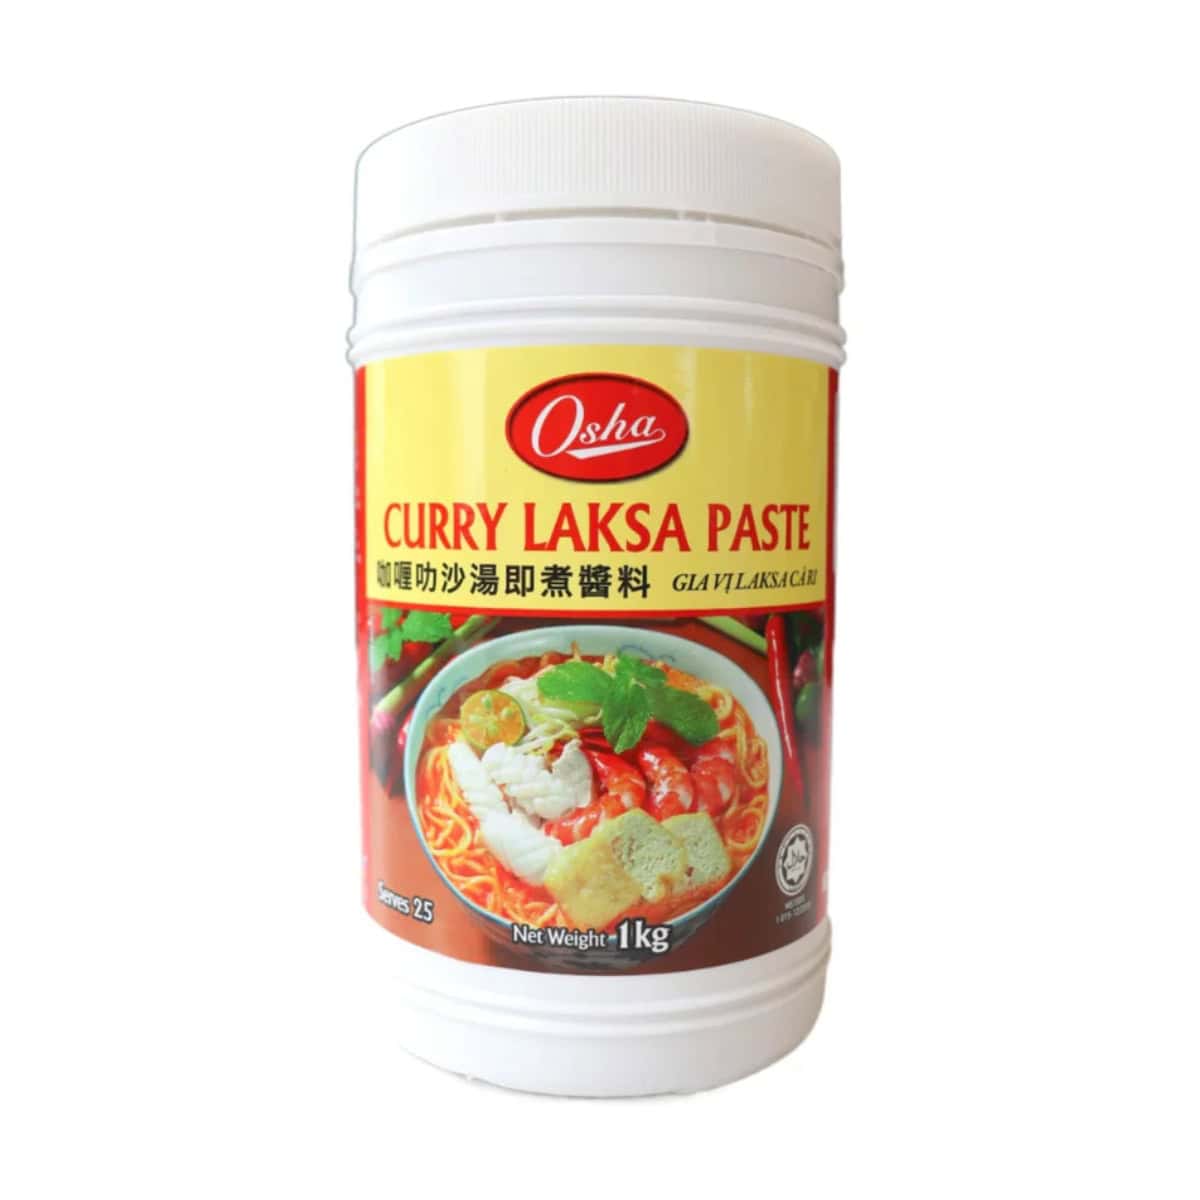 Buy Osha Curry Laksa Paste - 1 kg